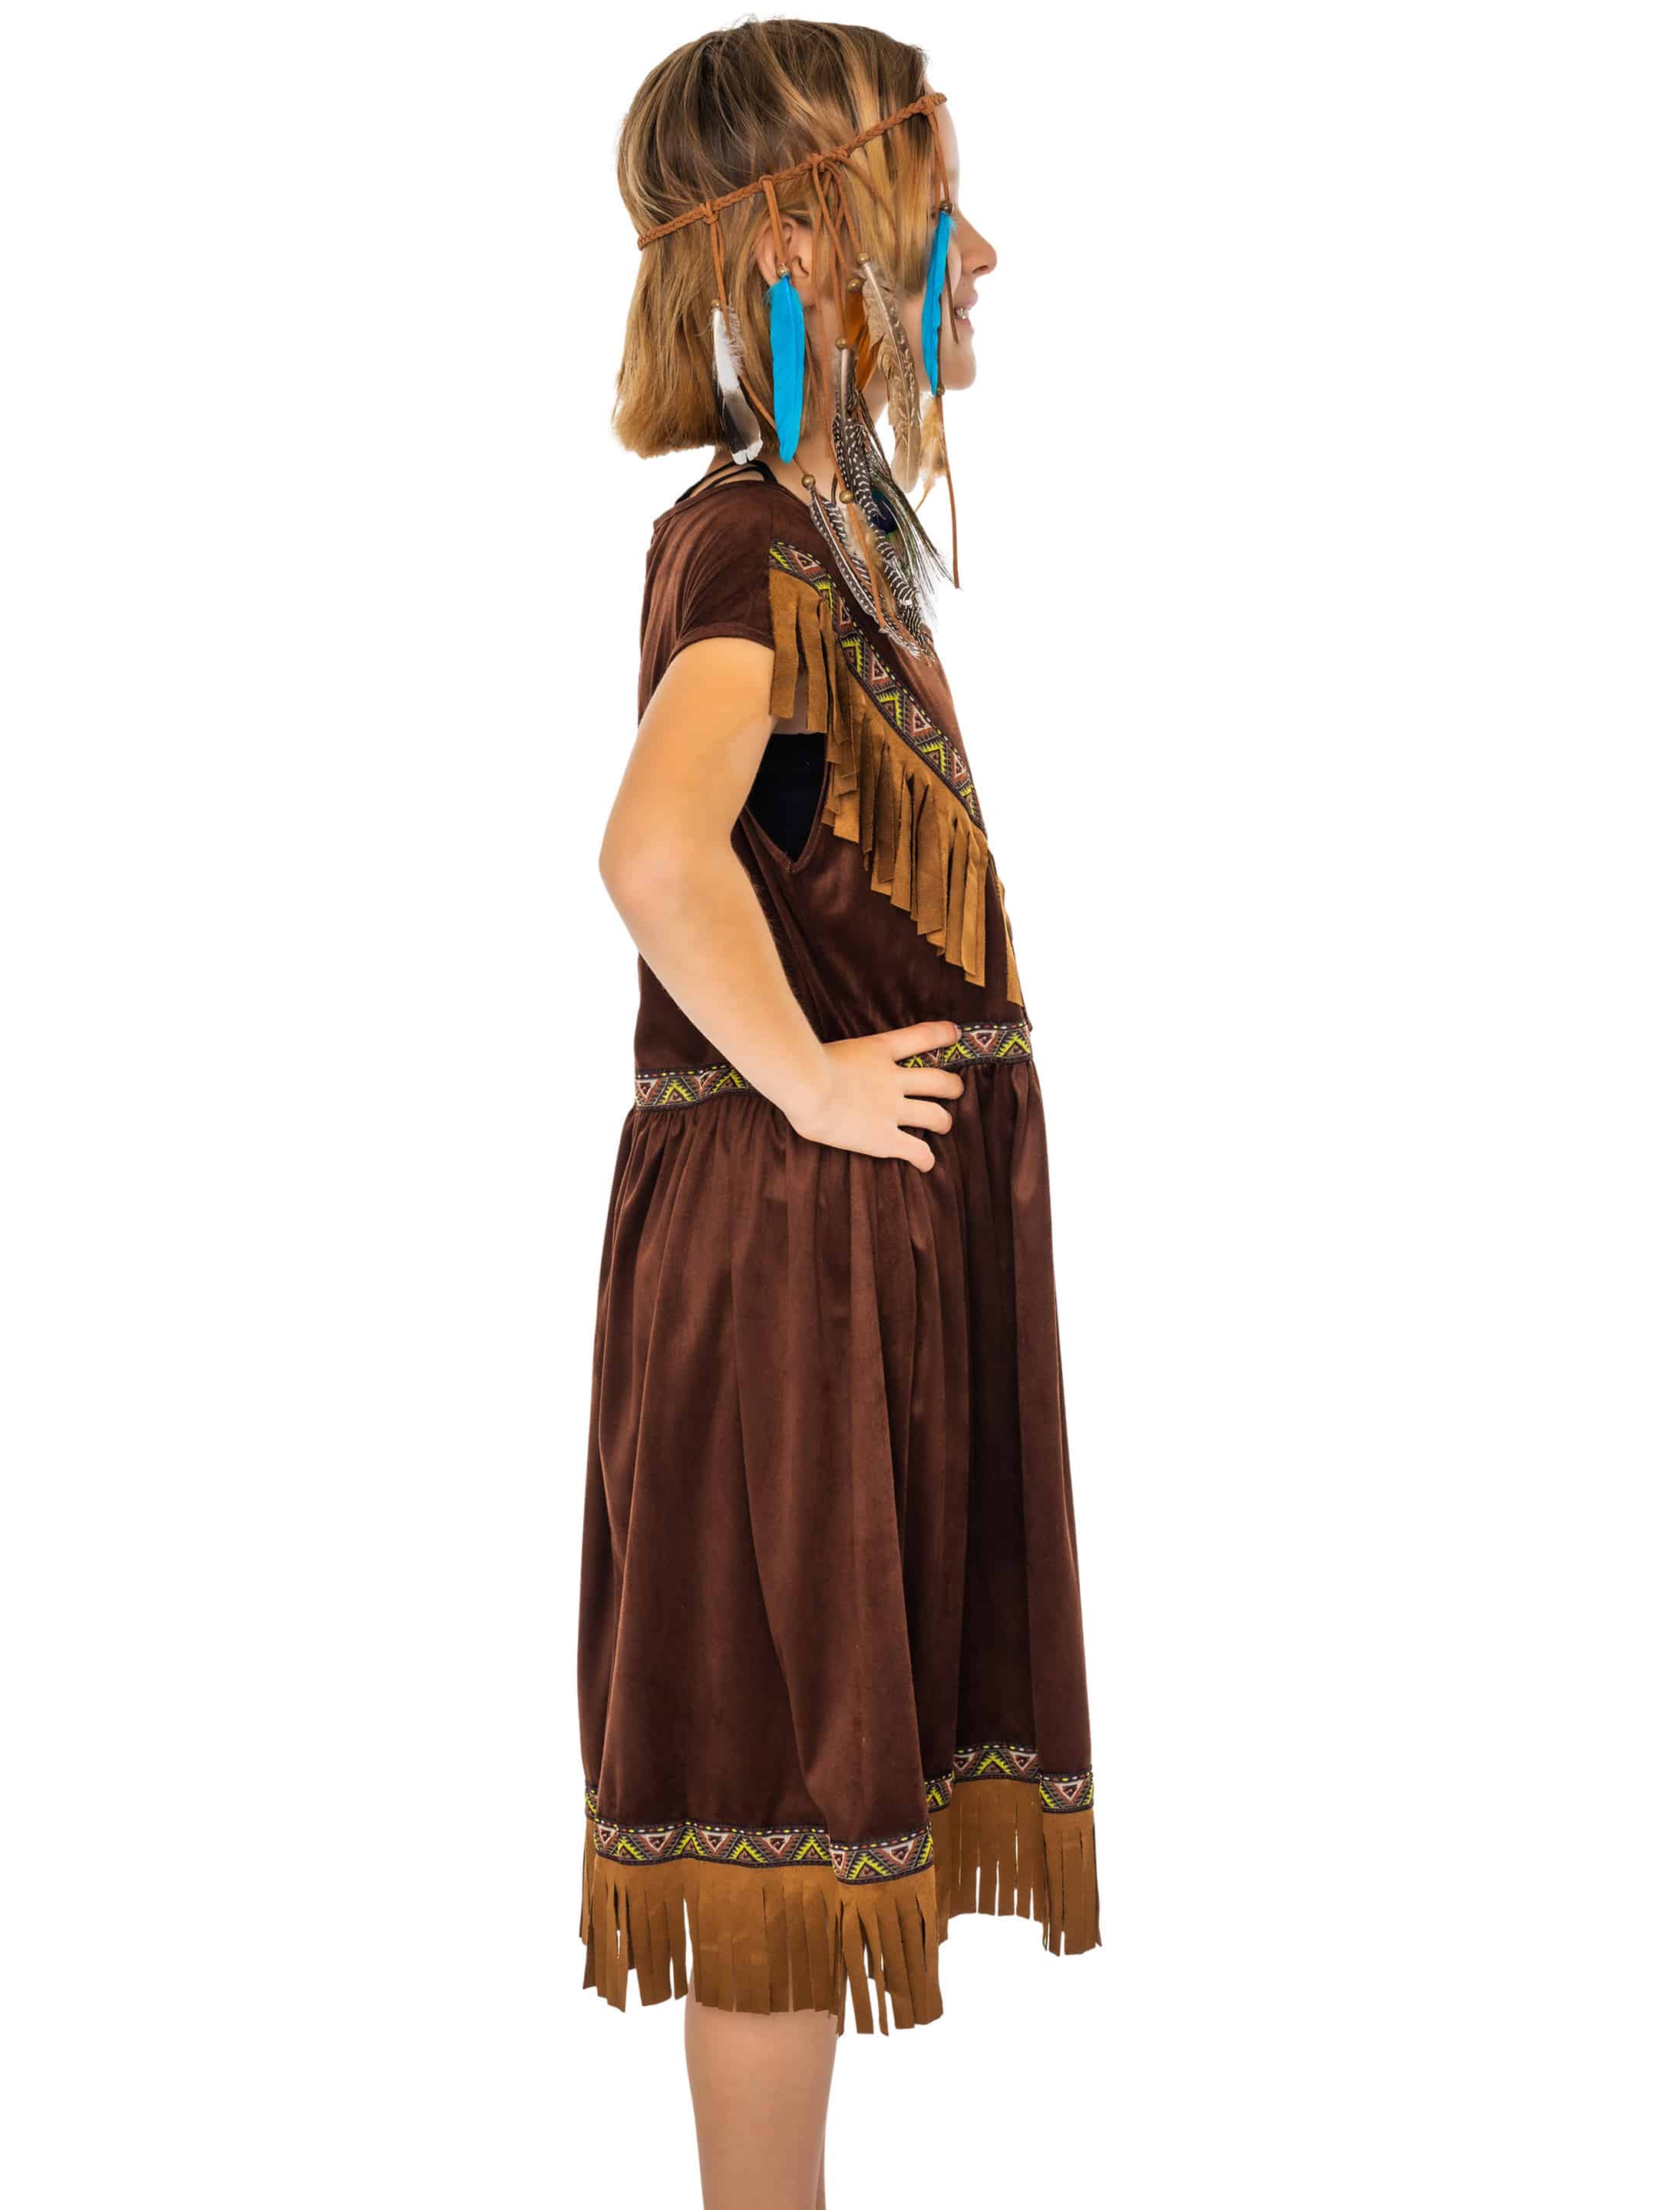 Kleid Indianerin Tahki Kinder Mädchen braun 164